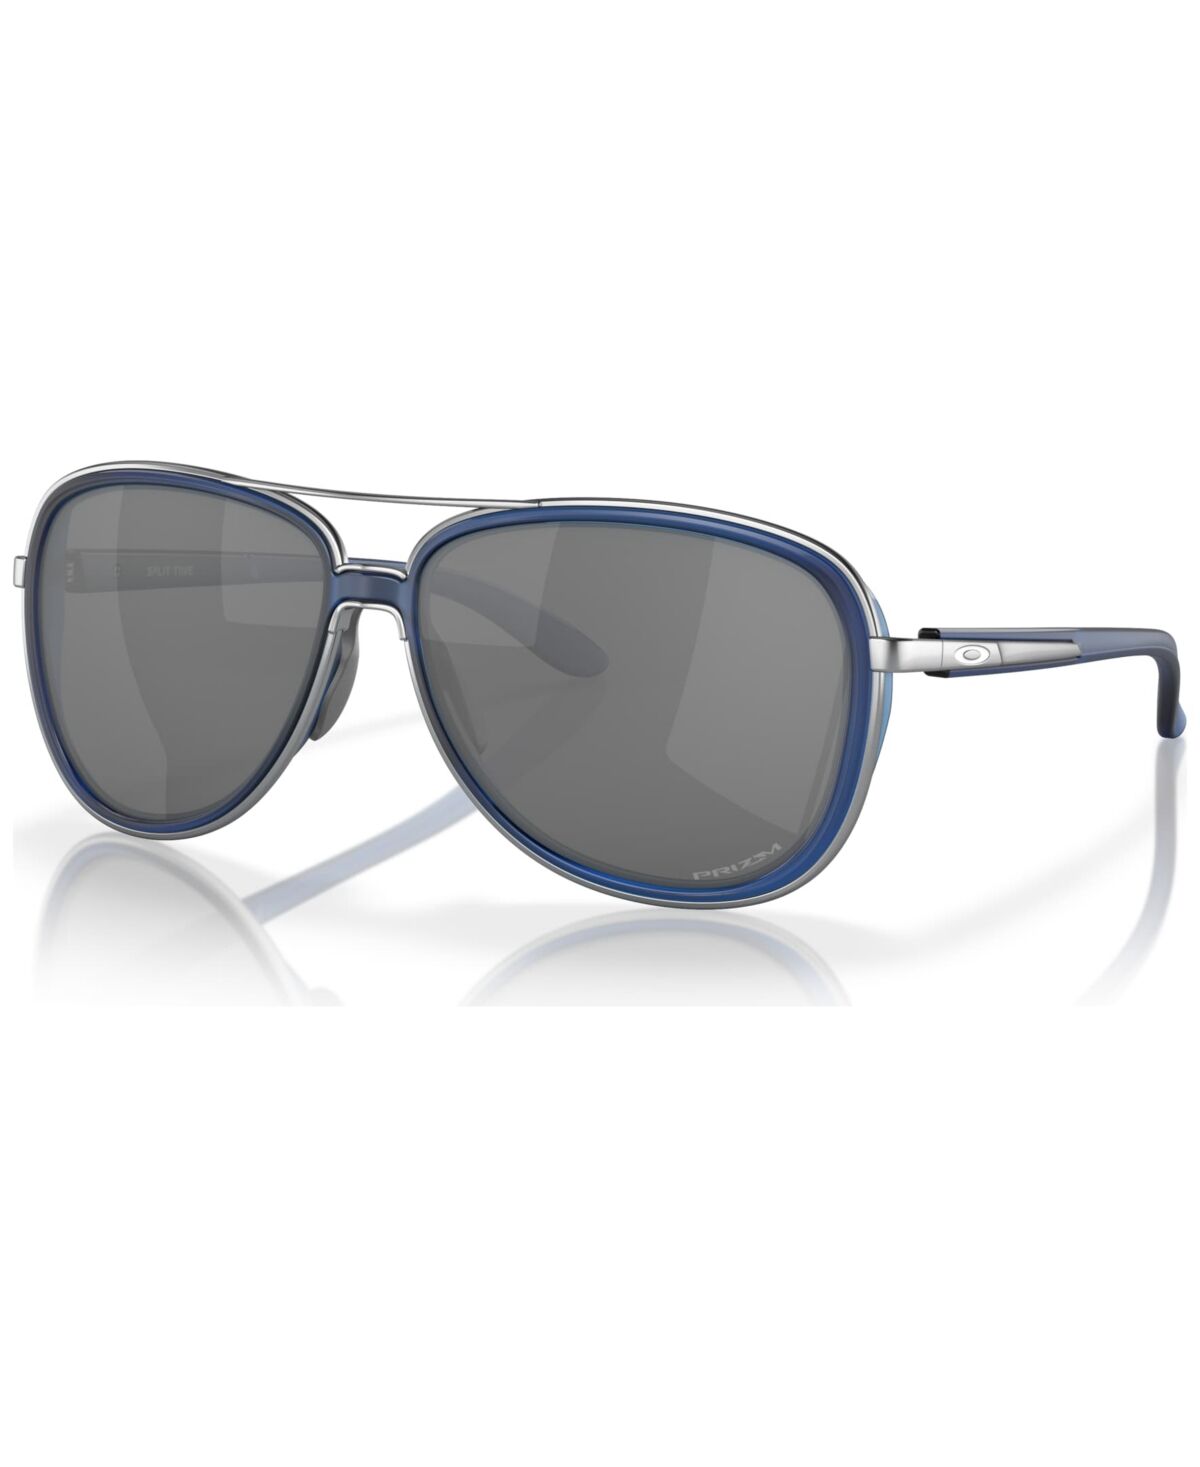 Oakley Women's Prizm Sunglasses, Split Time - Matte Transparent Blue